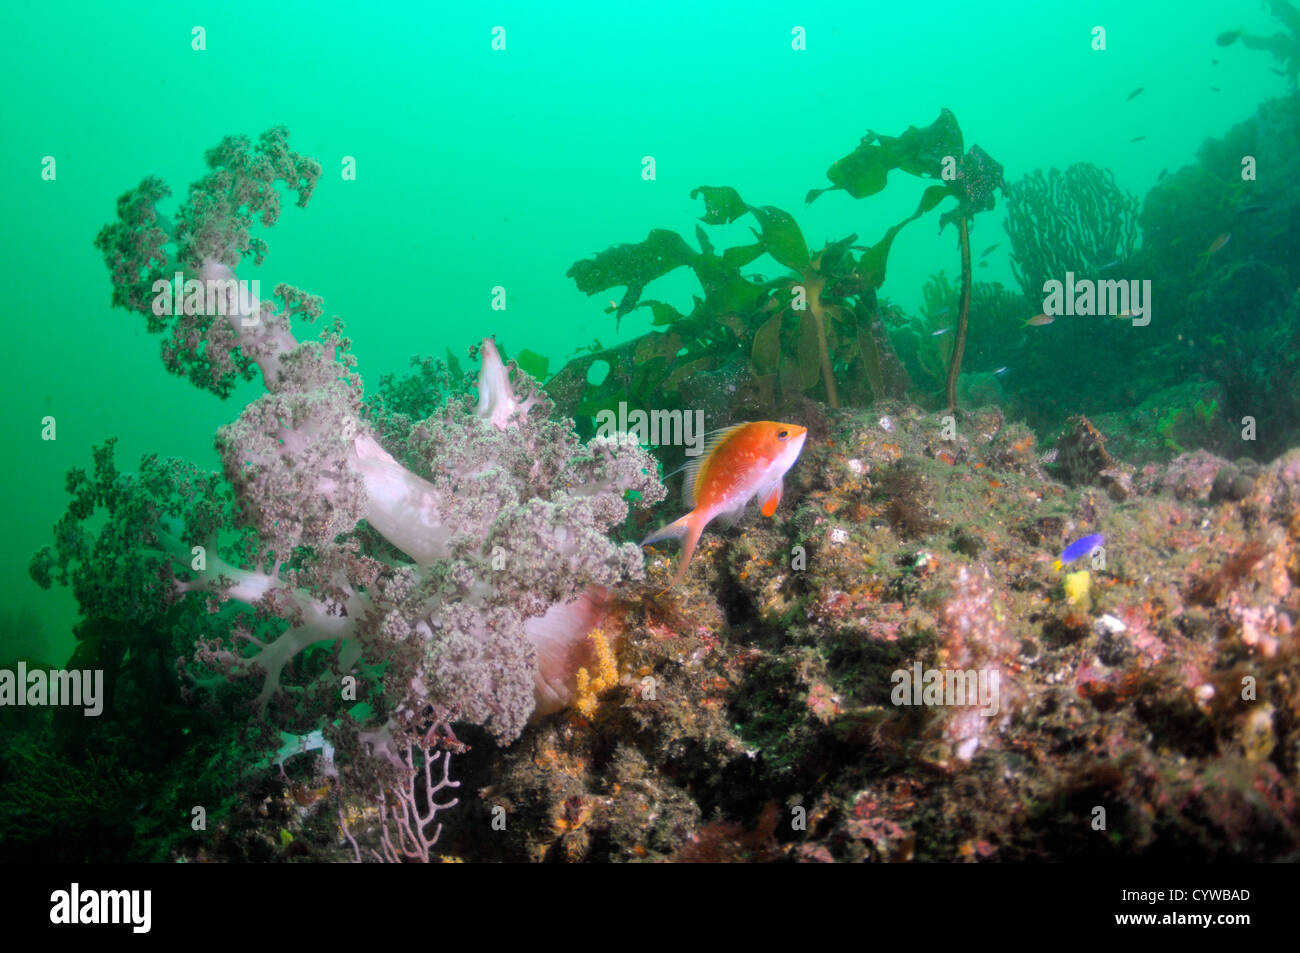 Marguerite basslet, Sacura margaritacea, et coraux mous, Bitagane, Atami, péninsule d'Izu, Japon Banque D'Images